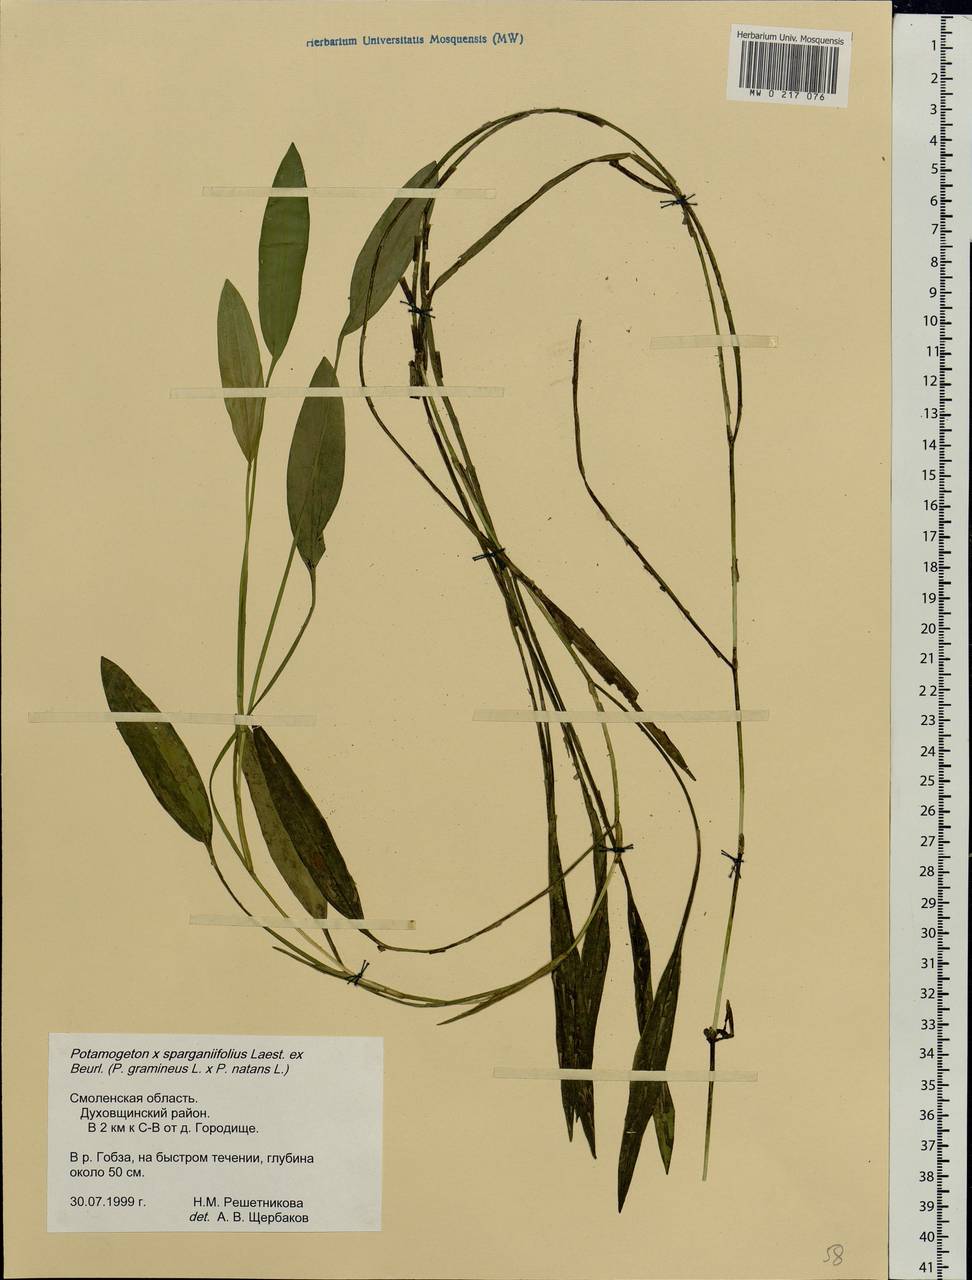 Potamogeton × sparganiifolius Laest. ex Fr., Восточная Европа, Западный район (E3) (Россия)